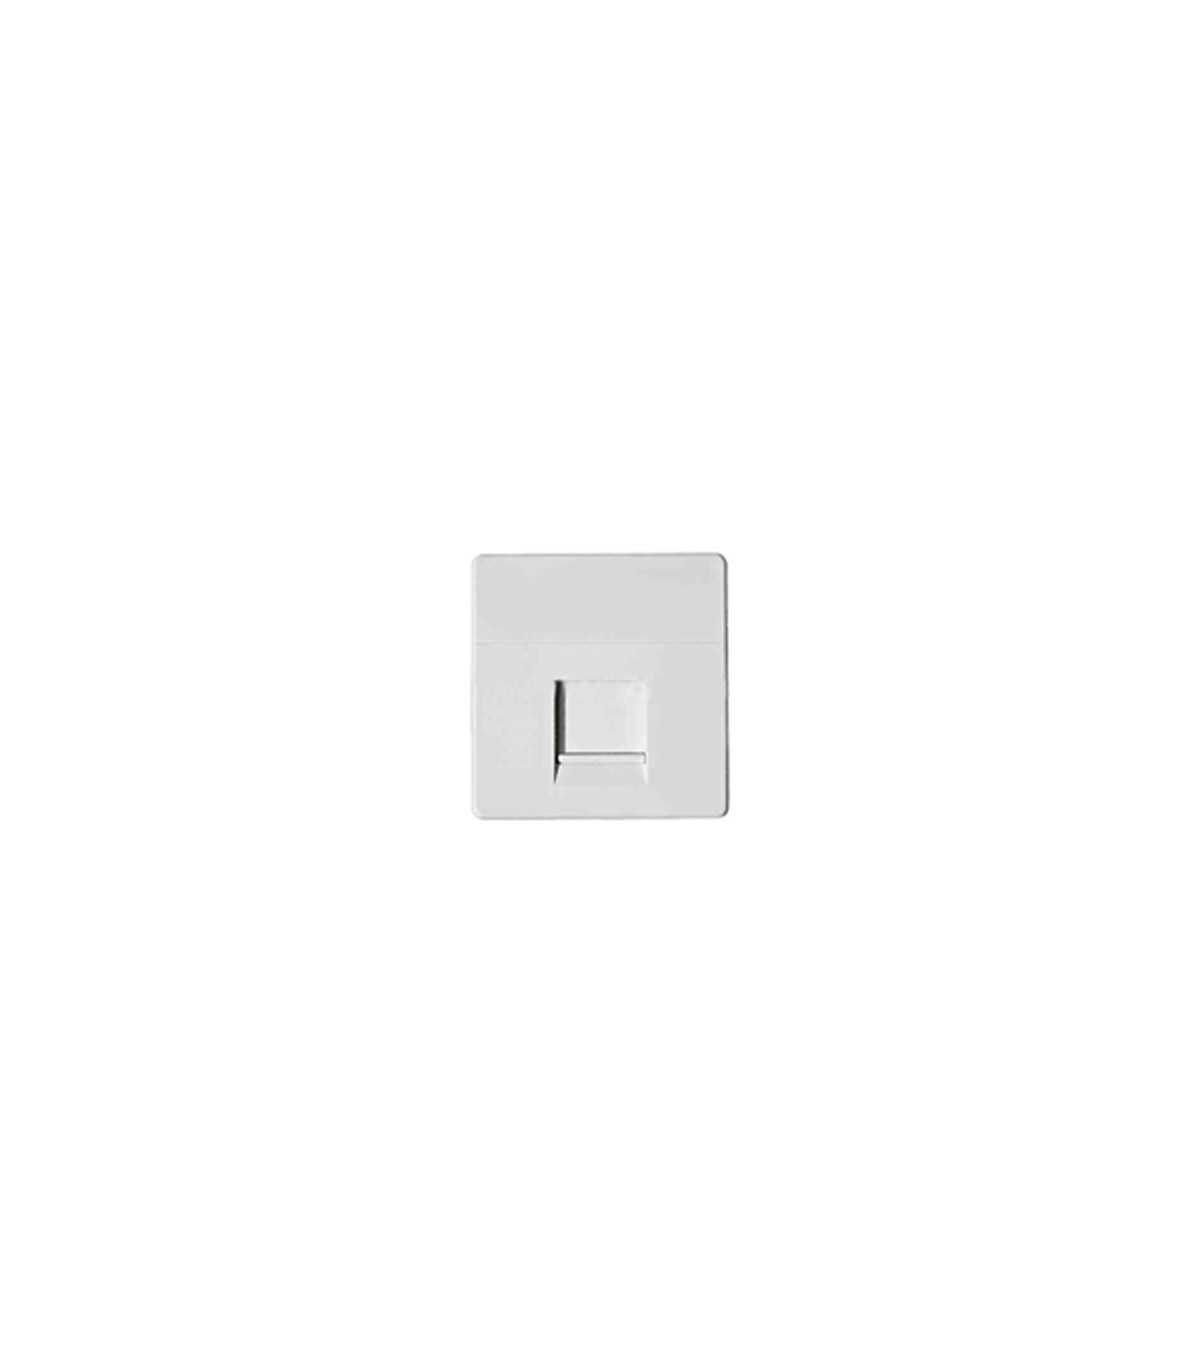 Conmutador luminoso blanco 27204-65 serie simon 27 play